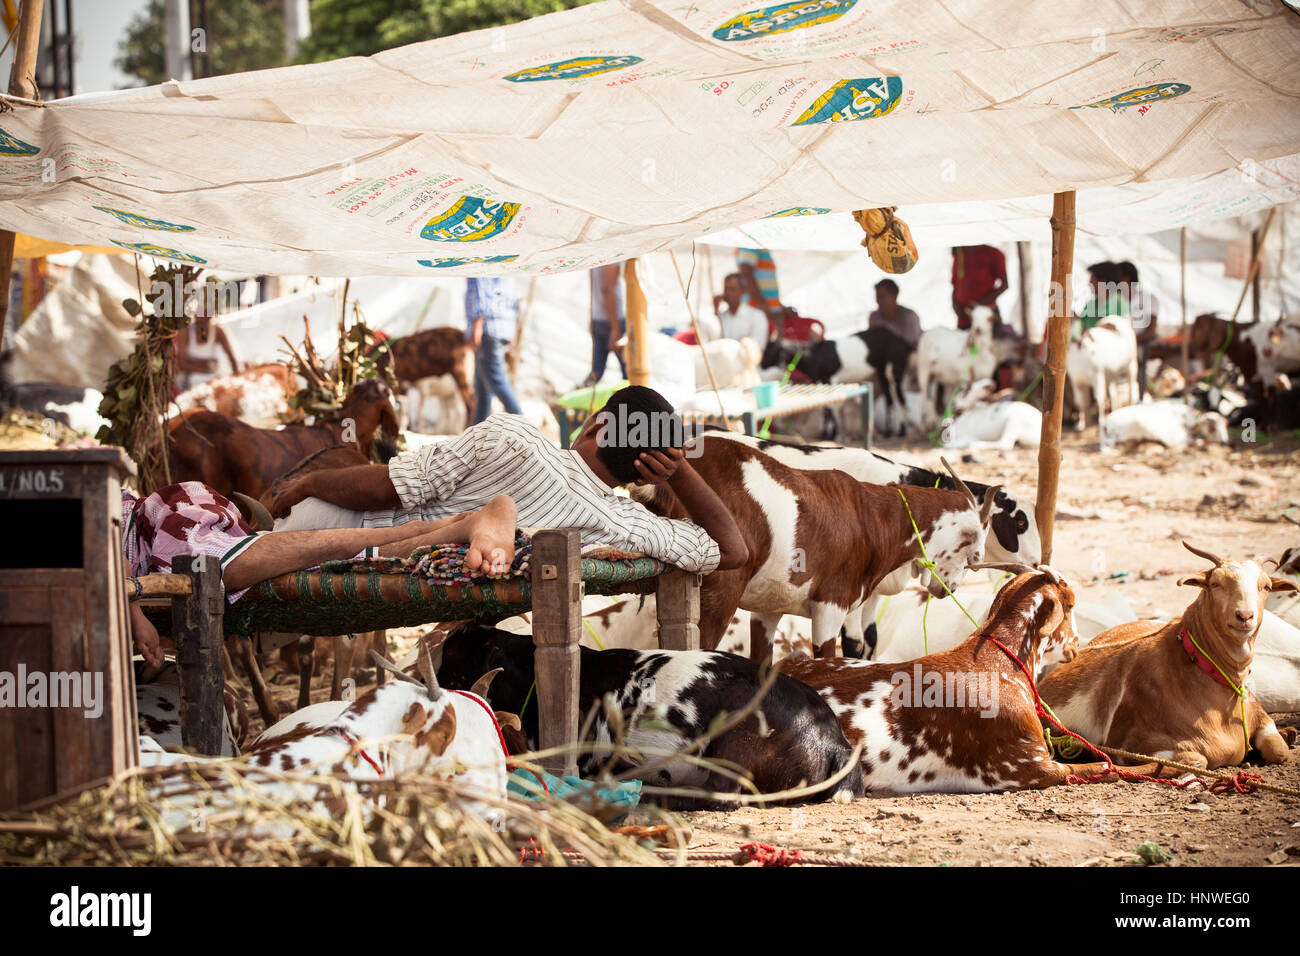 New Delhi, India - September 18, 2014: Men sell cattle on the street of New Delhi, India Stock Photo